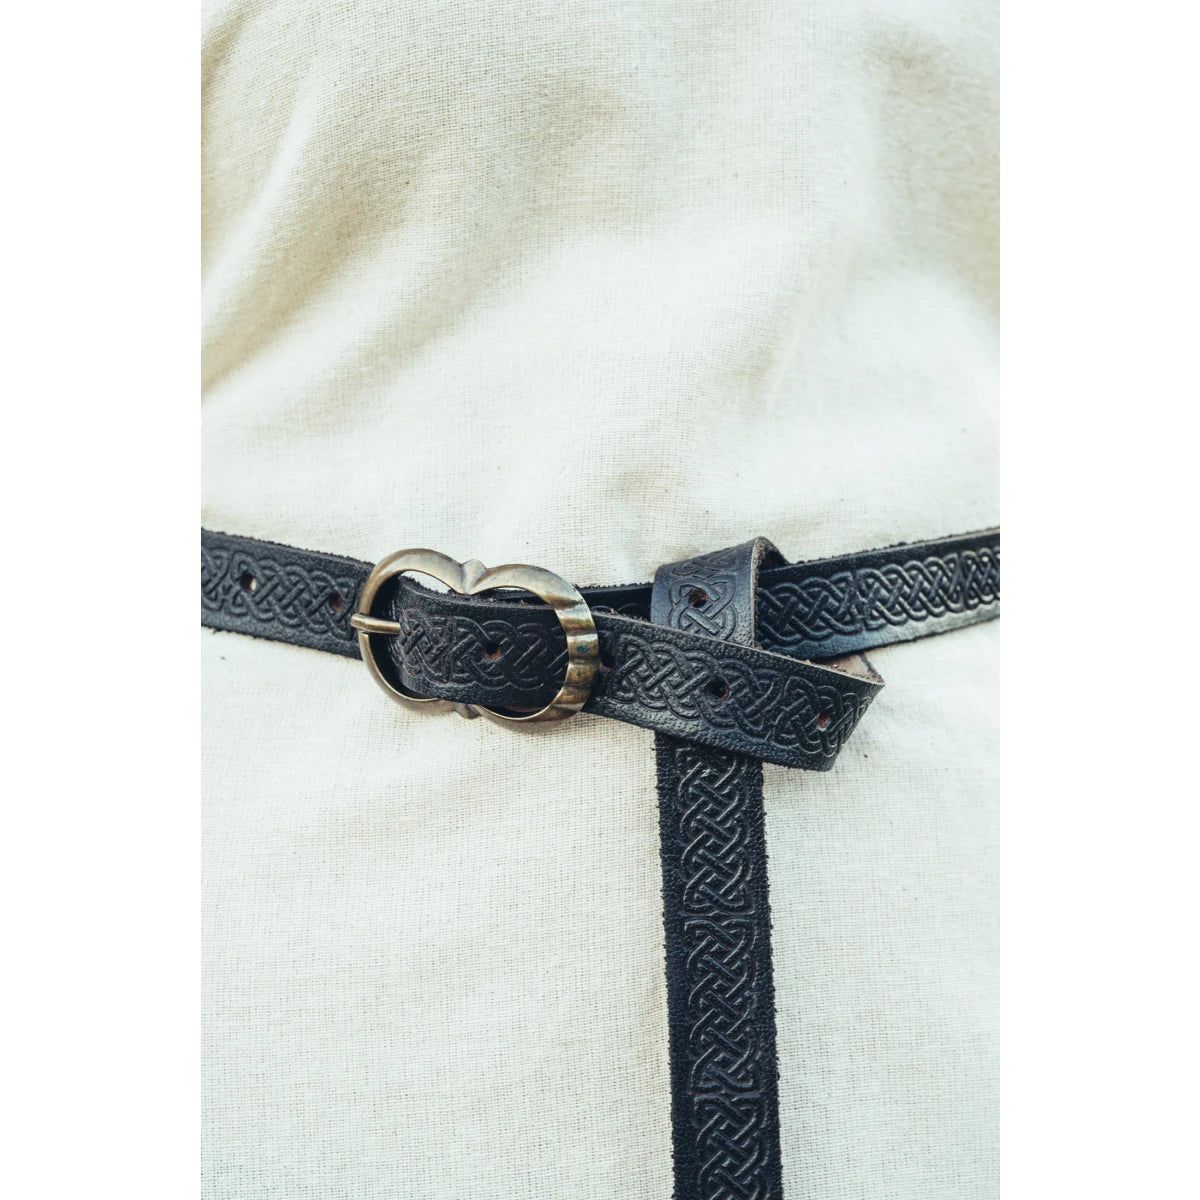 Cinturón vikingo de cuero estampado para mujer | Diseño de nudo celta.